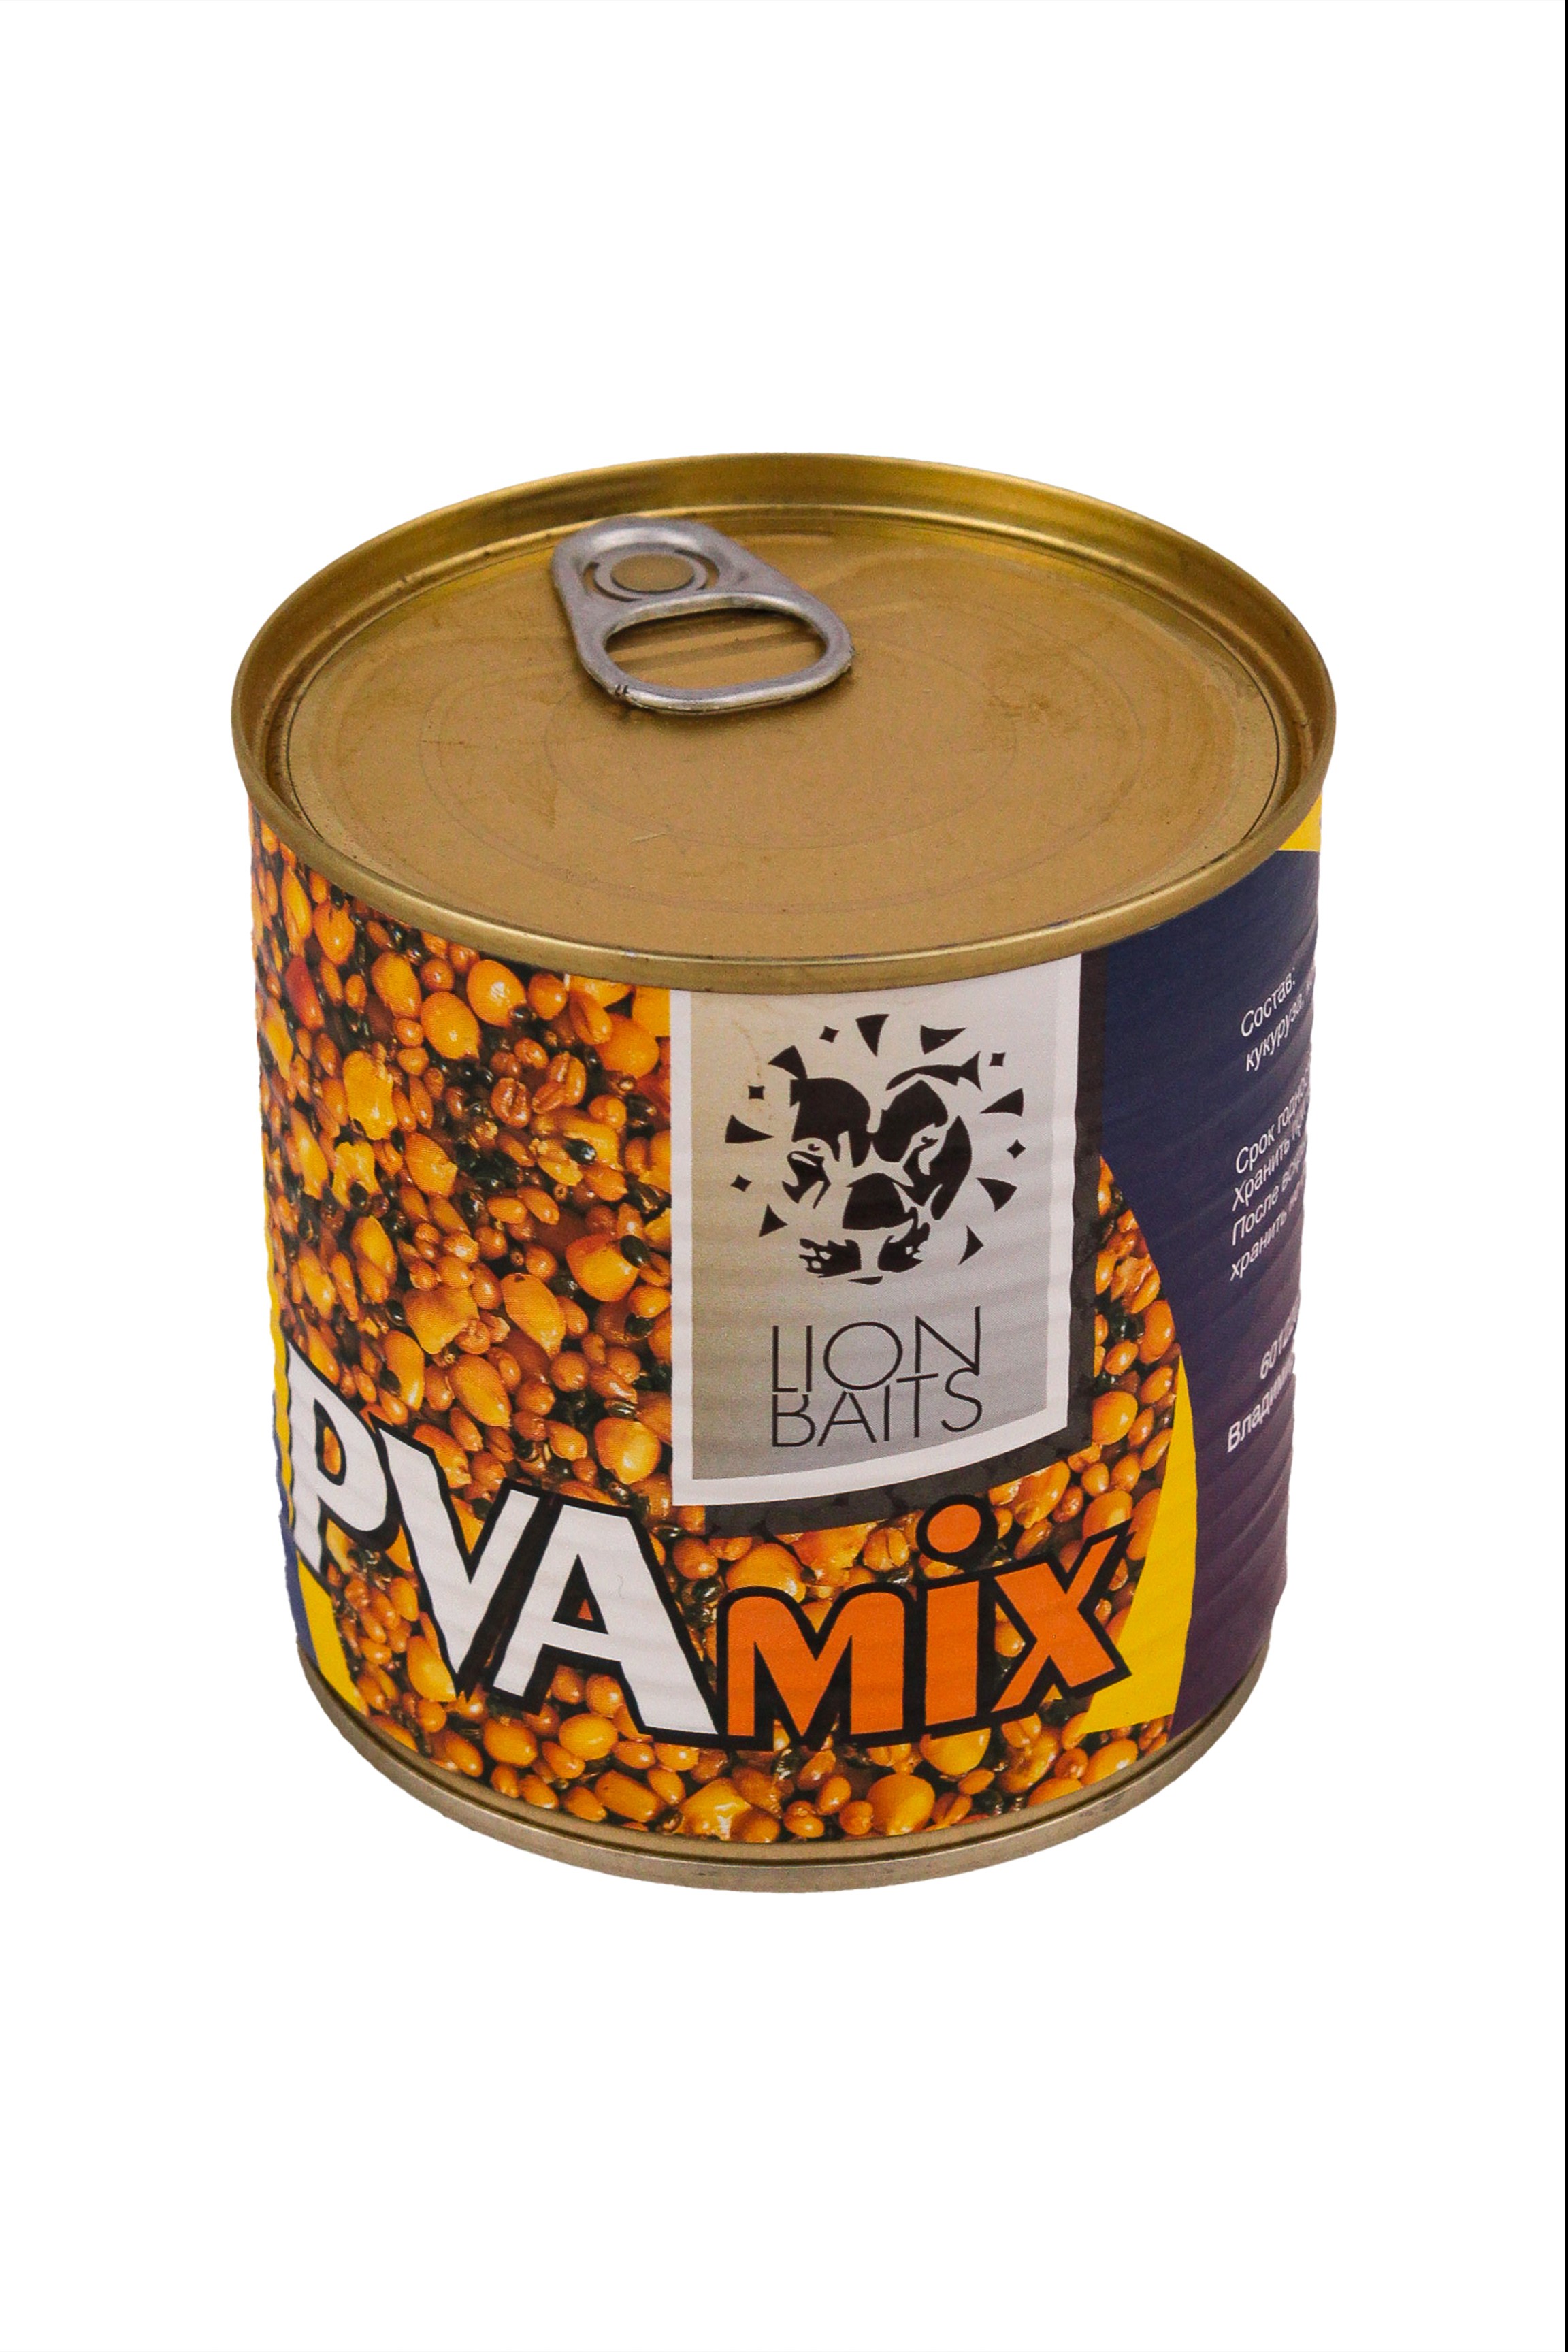 Консервированная зерновая смесь Lion Baits pva mix 430мл - фото 1